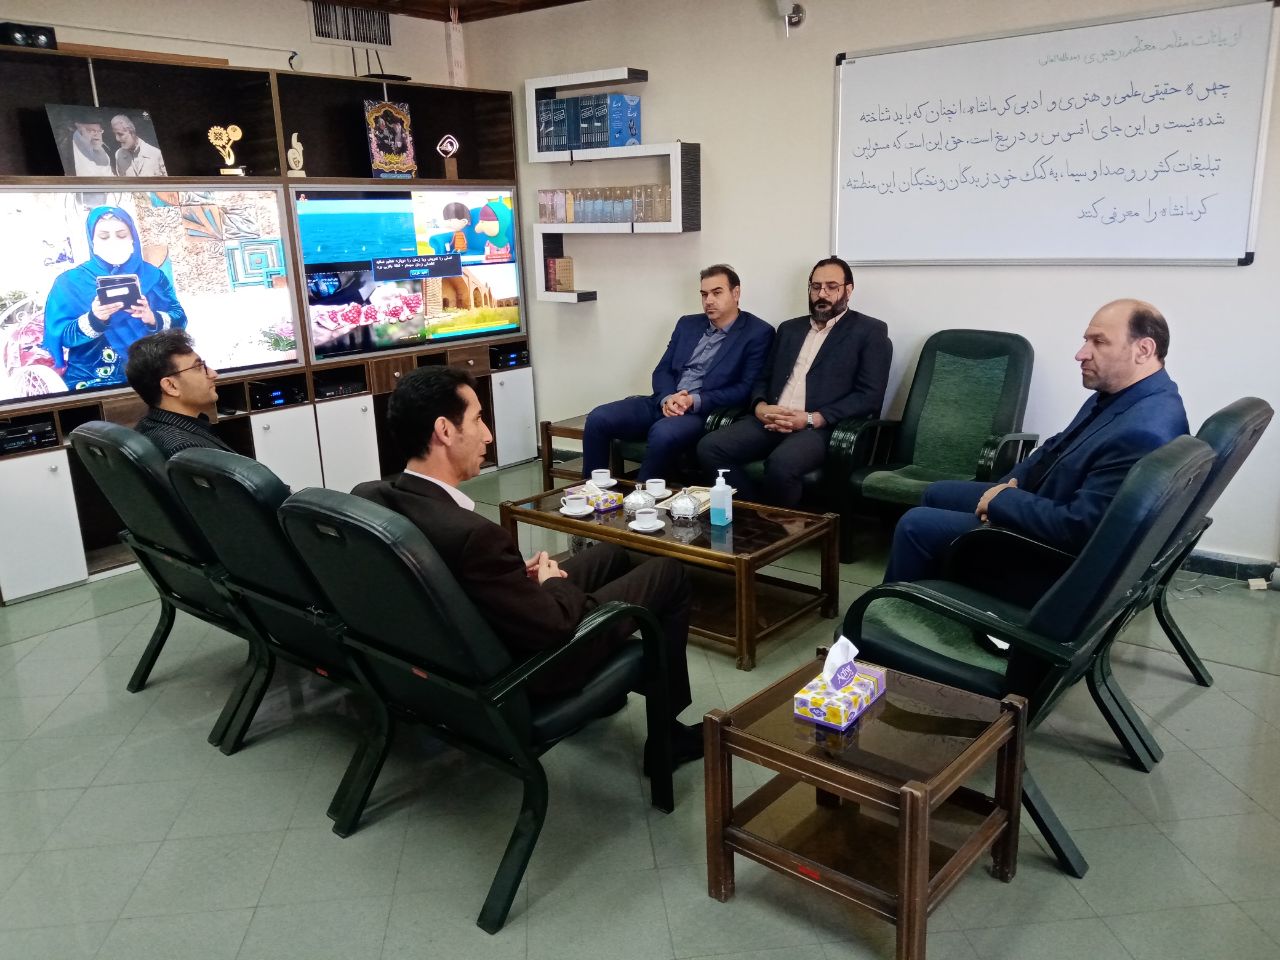 برنامه سازی در شبکه استانی کرمانشاه با هدف گسترش قانون مداری در جامعه